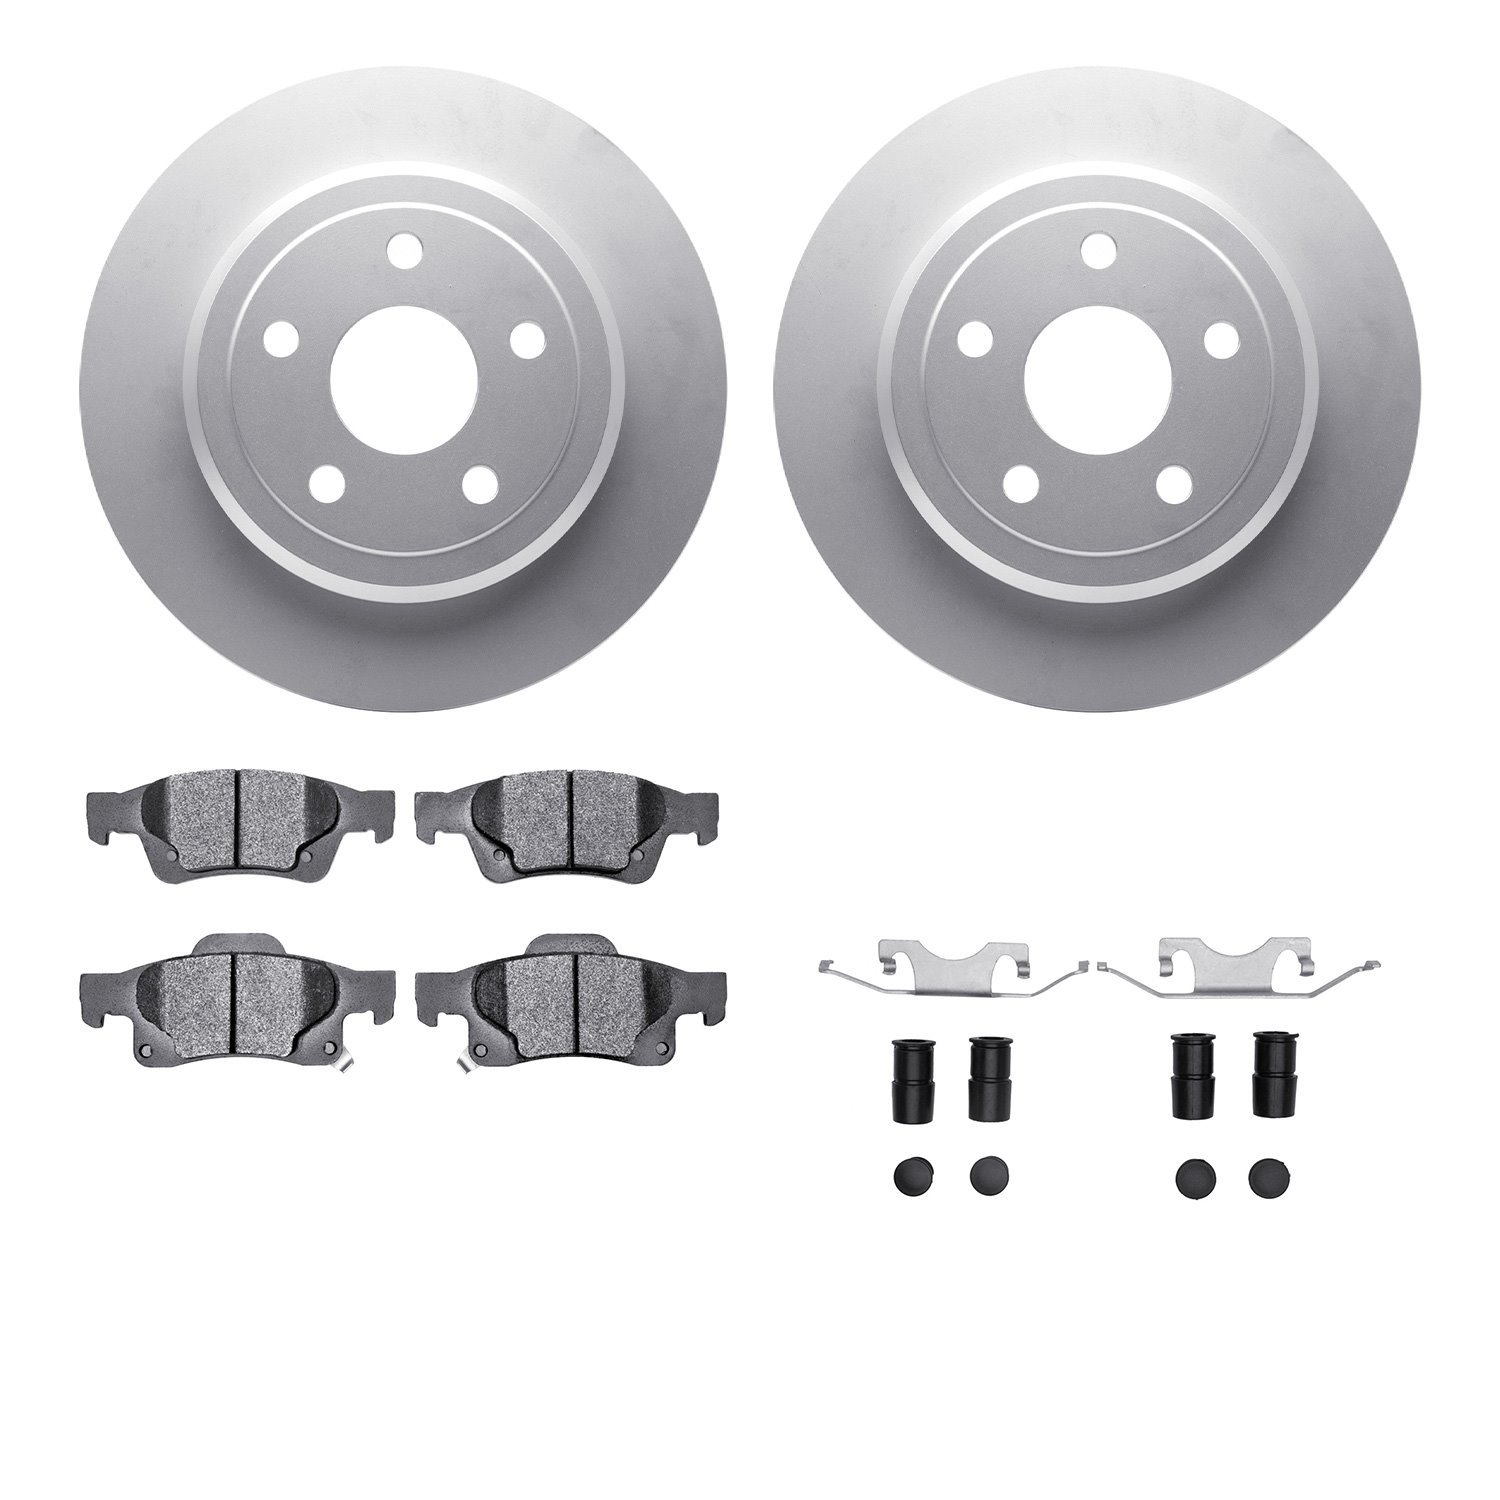 4212-42001 Geospec Brake Rotors w/Heavy-Duty Brake Pads & Hardware, Fits Select Mopar, Position: Rear